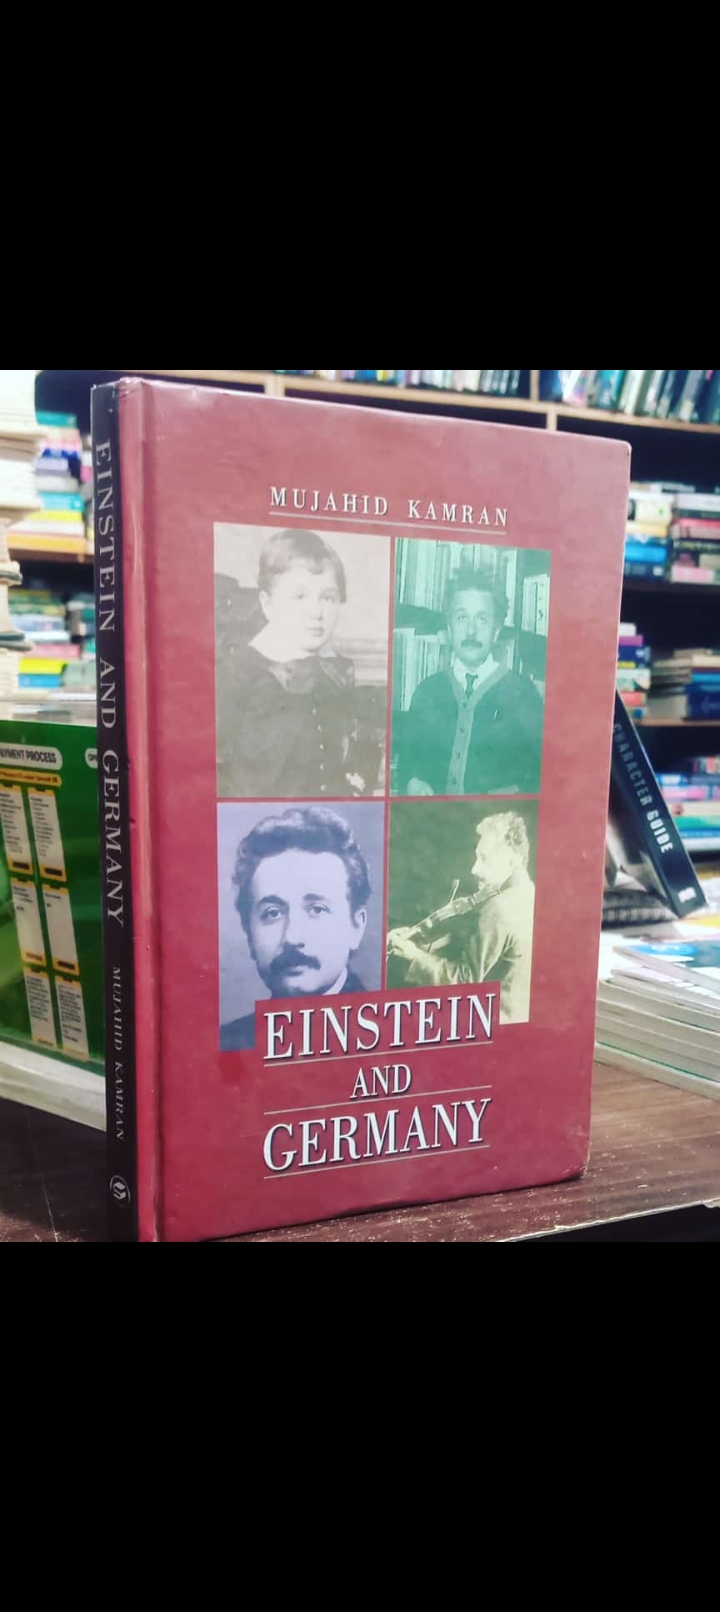 einstine and germany by mujahid kamran. original hardcover